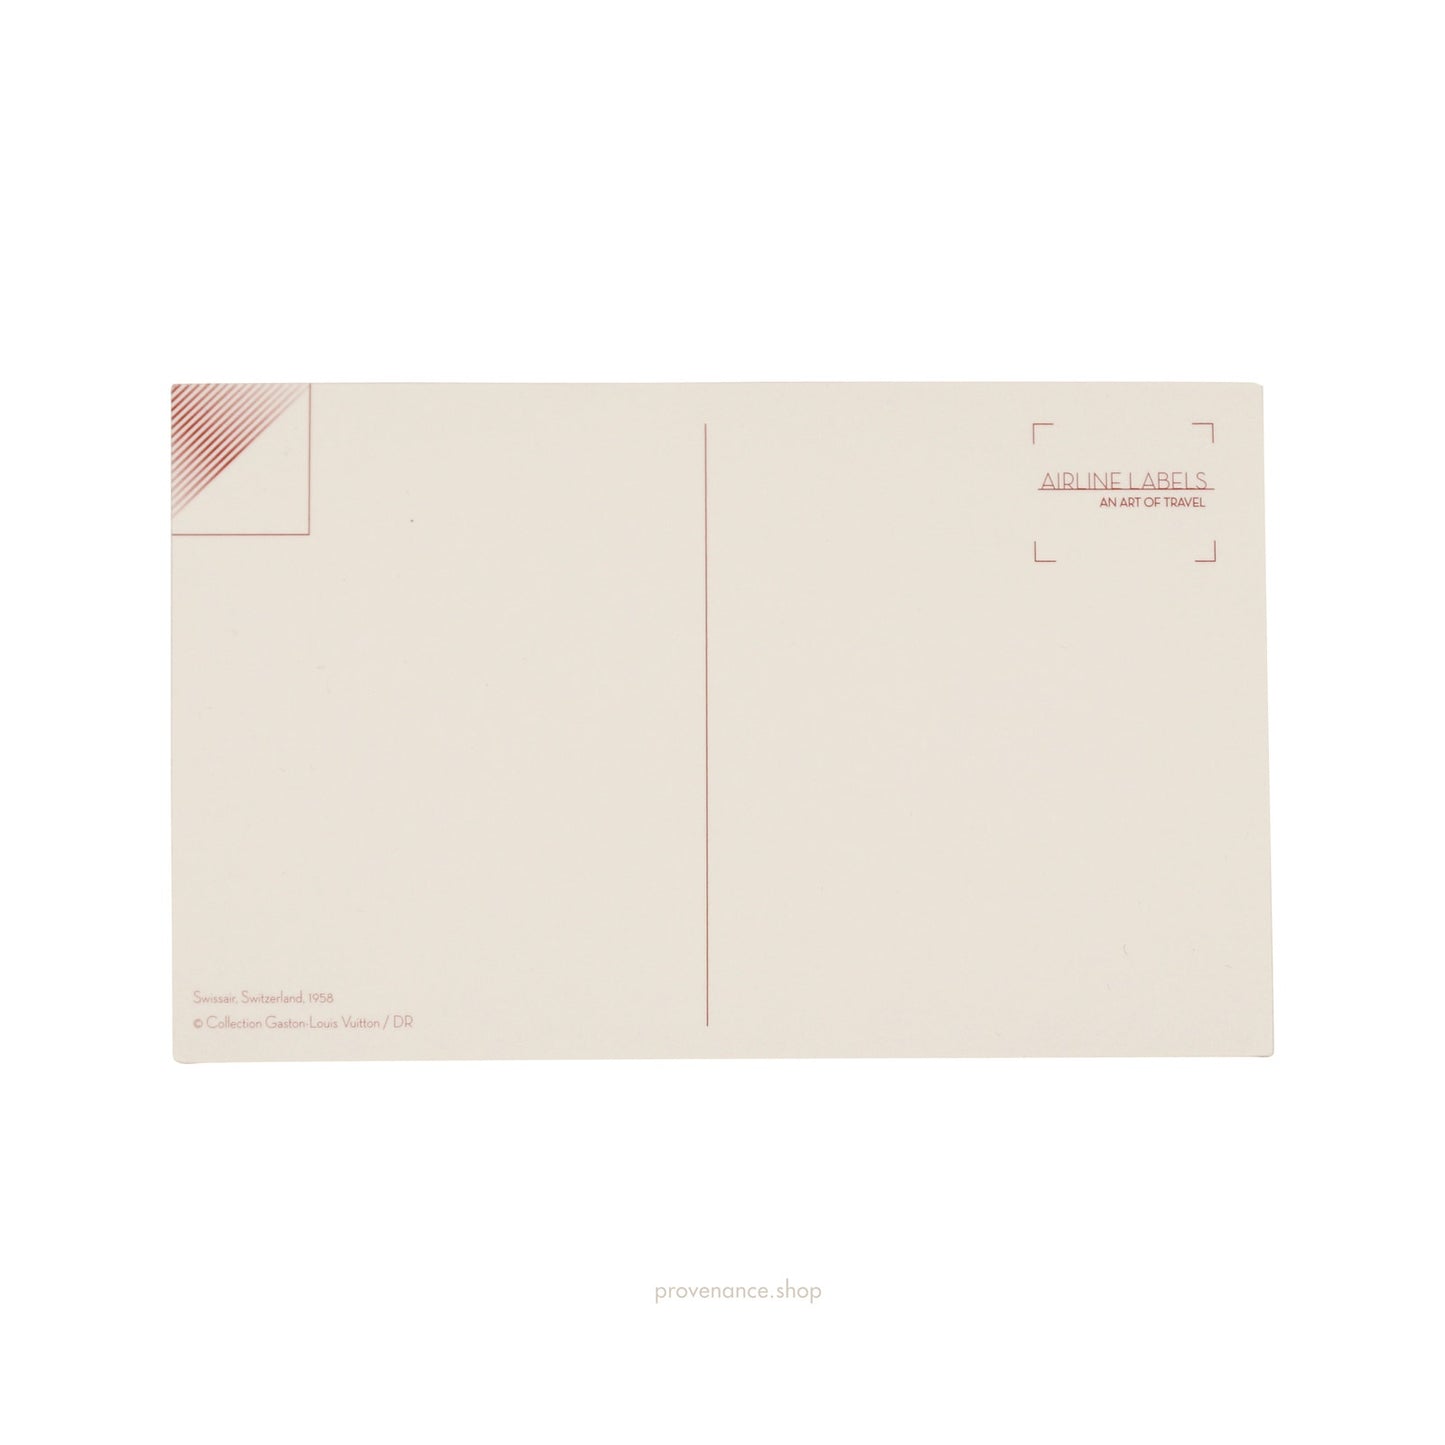 🔴 Louis Vuitton Airline Label Postcard Sticker - SWISSAIR INDIA